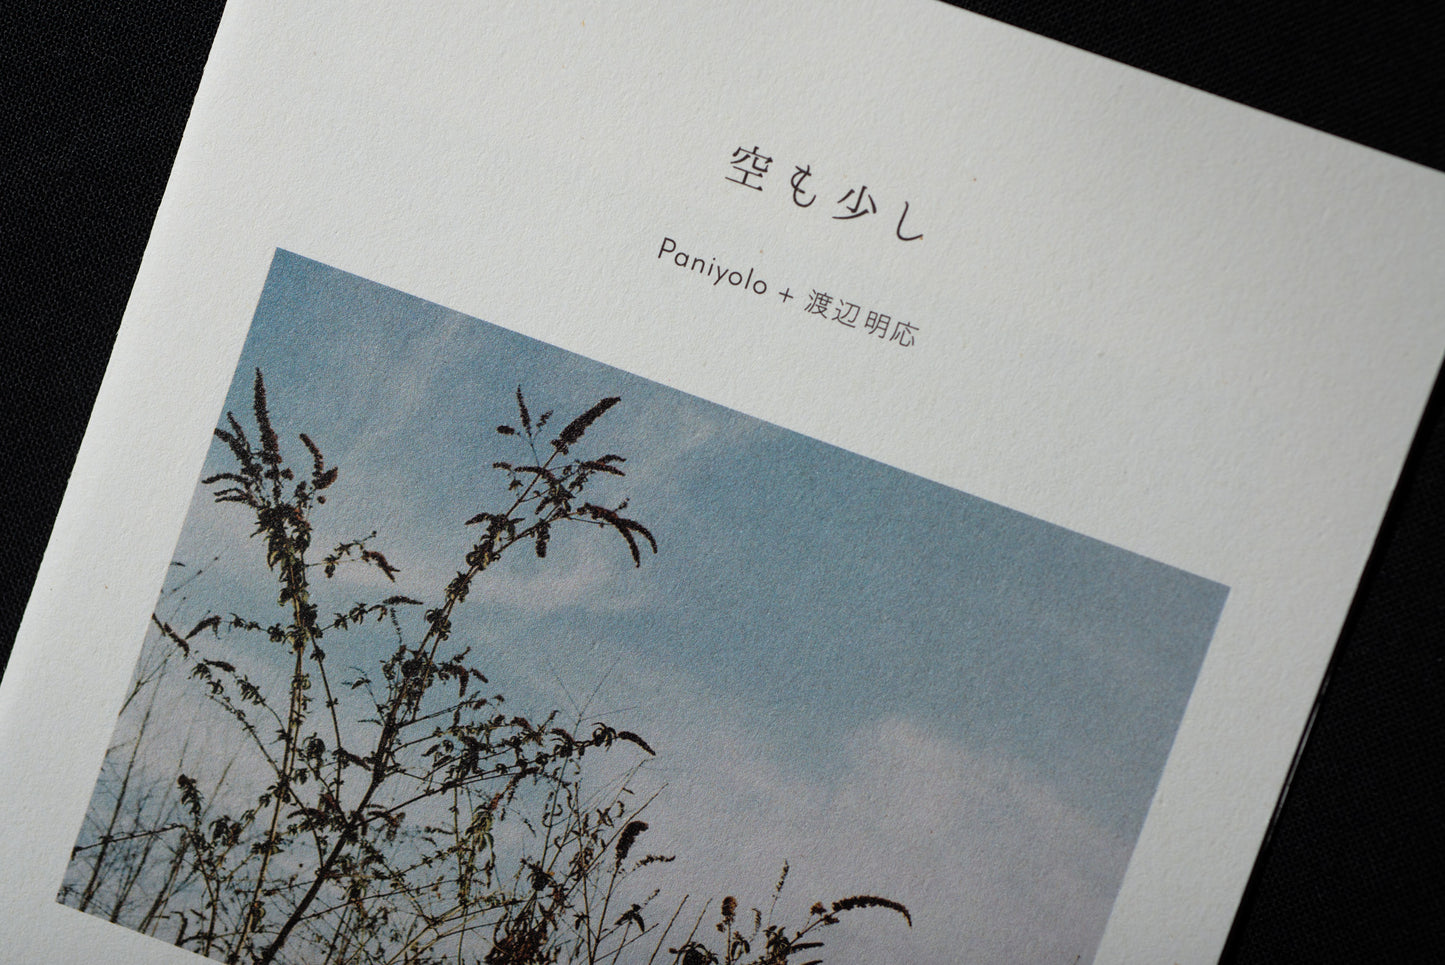 Paniyolo + Akio Watanabe - Passage of sky